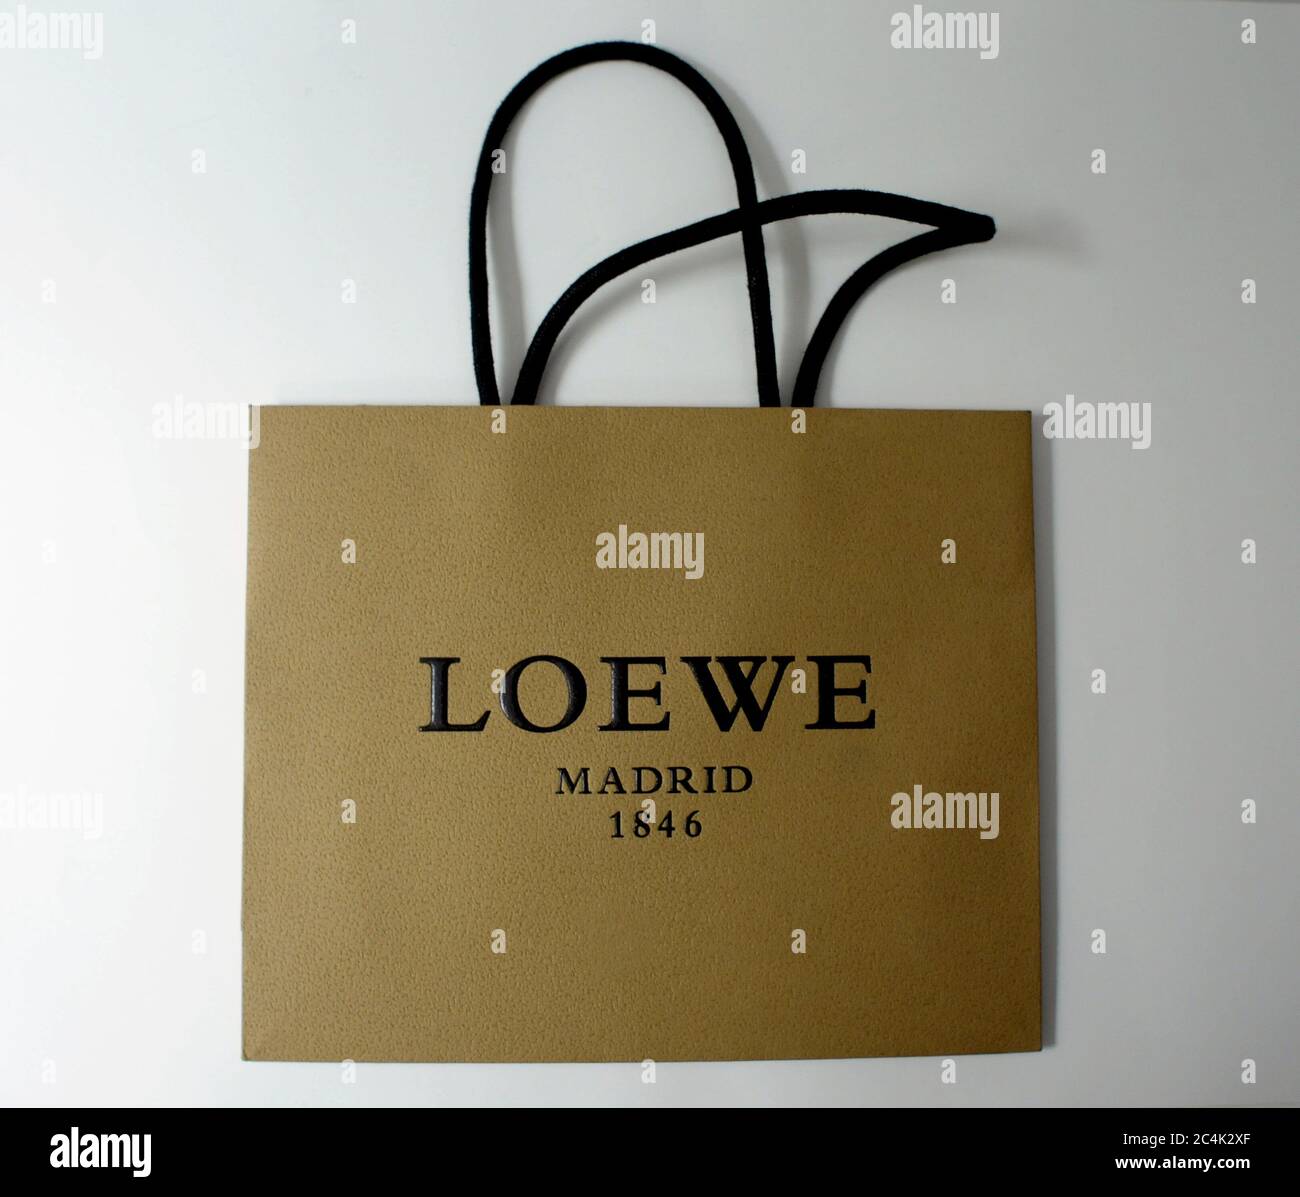 loewe shopping bag